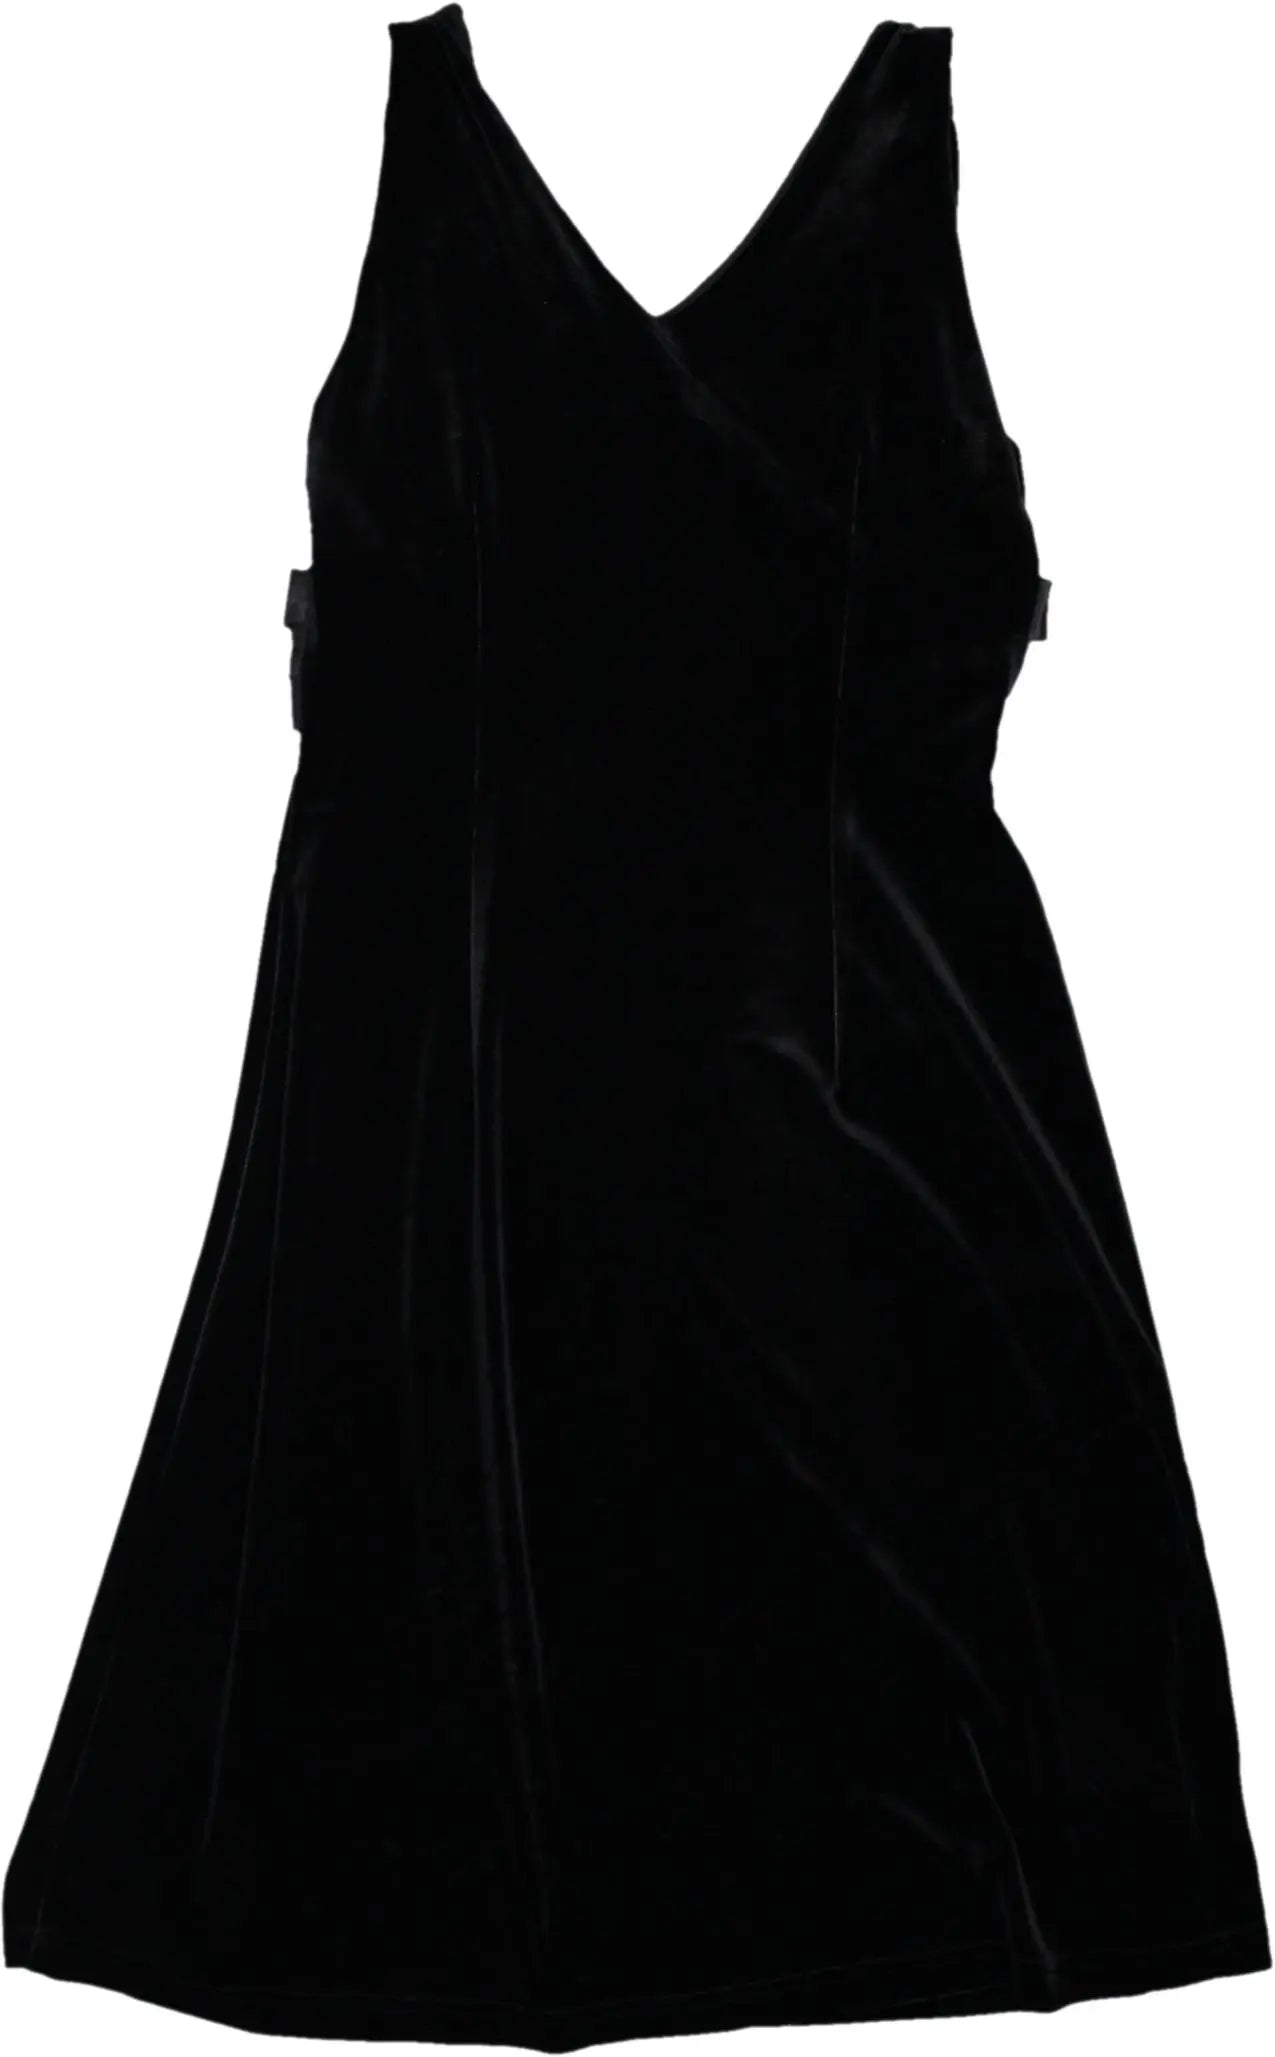 ELFE by Elif Ertürk - Velvet Black Dress- ThriftTale.com - Vintage and second handclothing